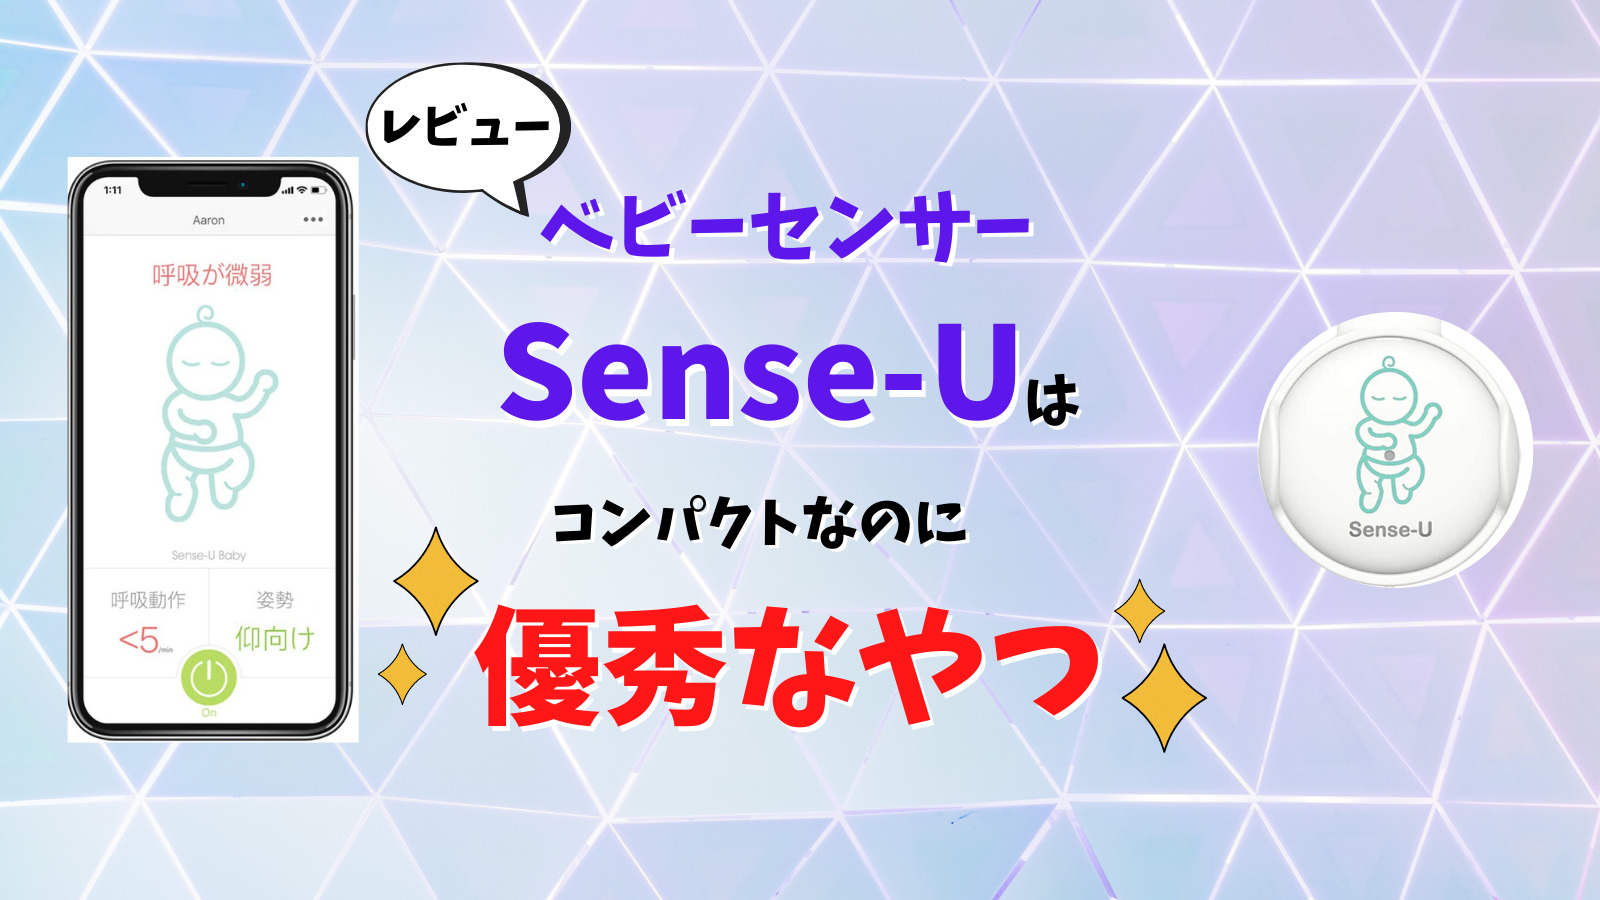 レビュー】ベビーセンサー「Sense-U」はコンパクトなのに使える、優秀なやつ。